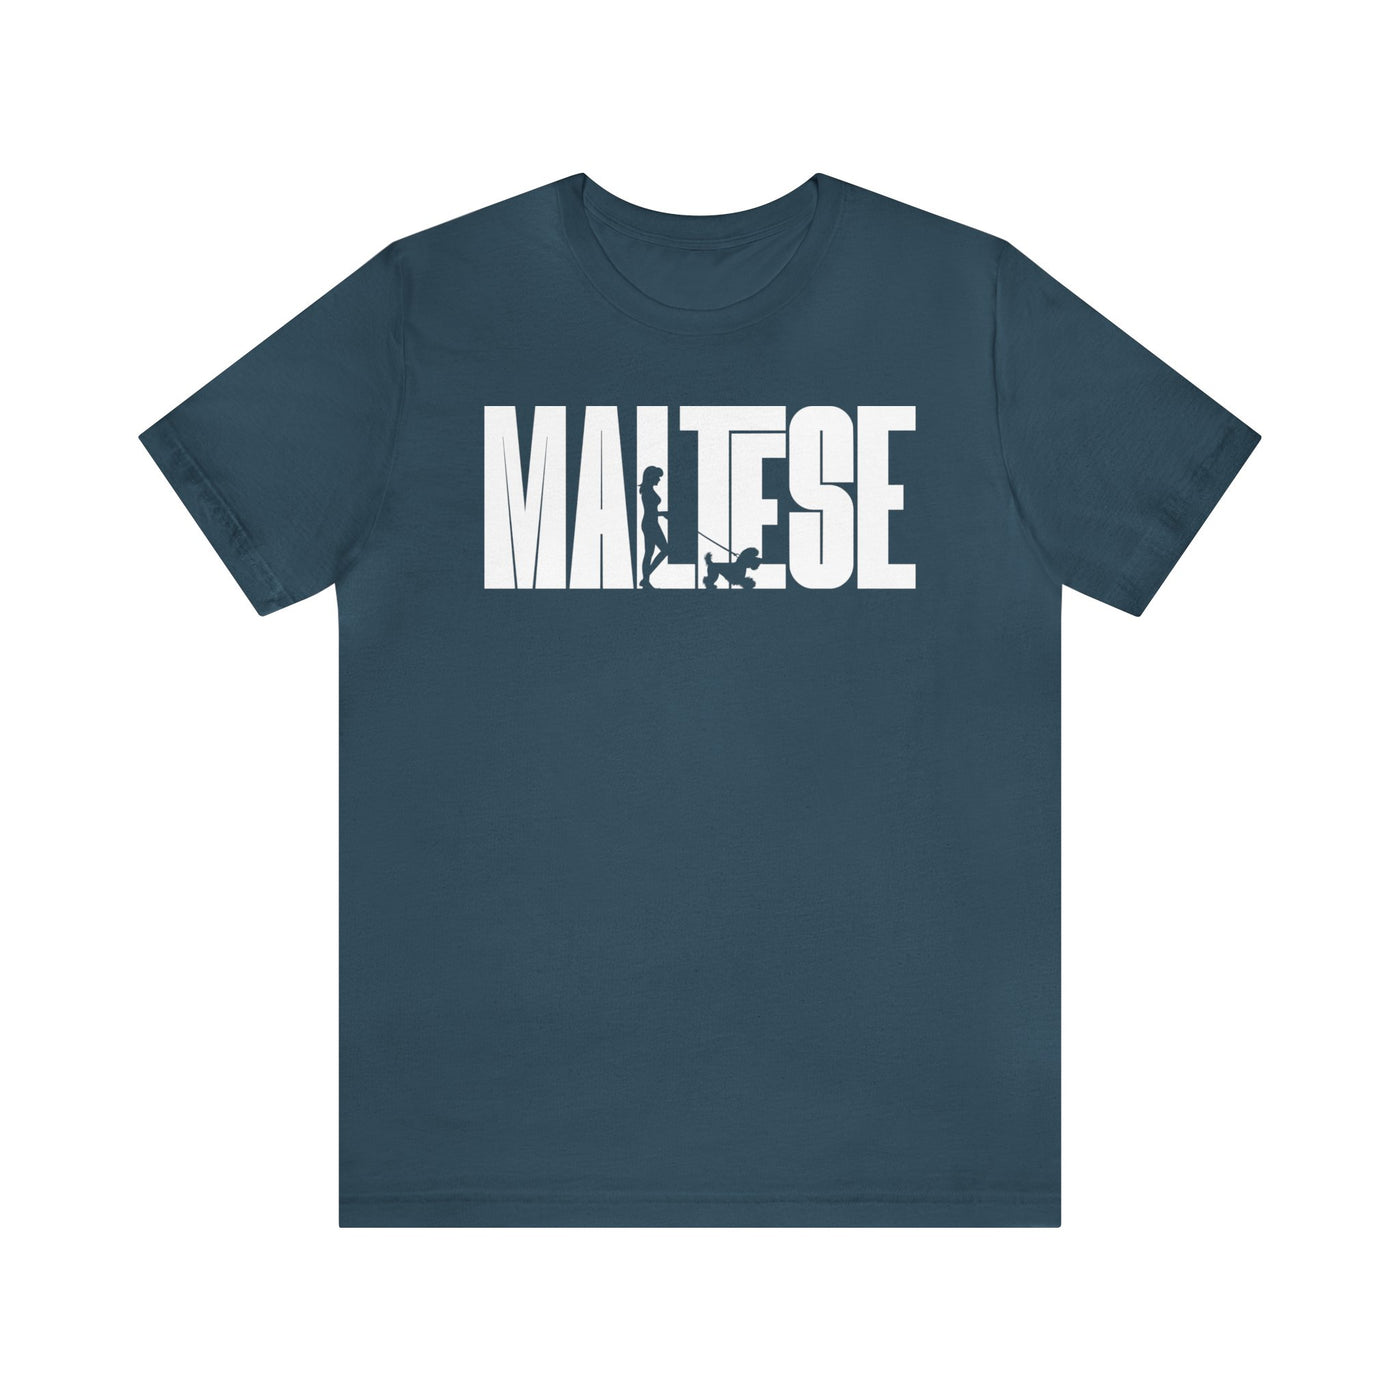 Maltese Dog Walking T-Shirt